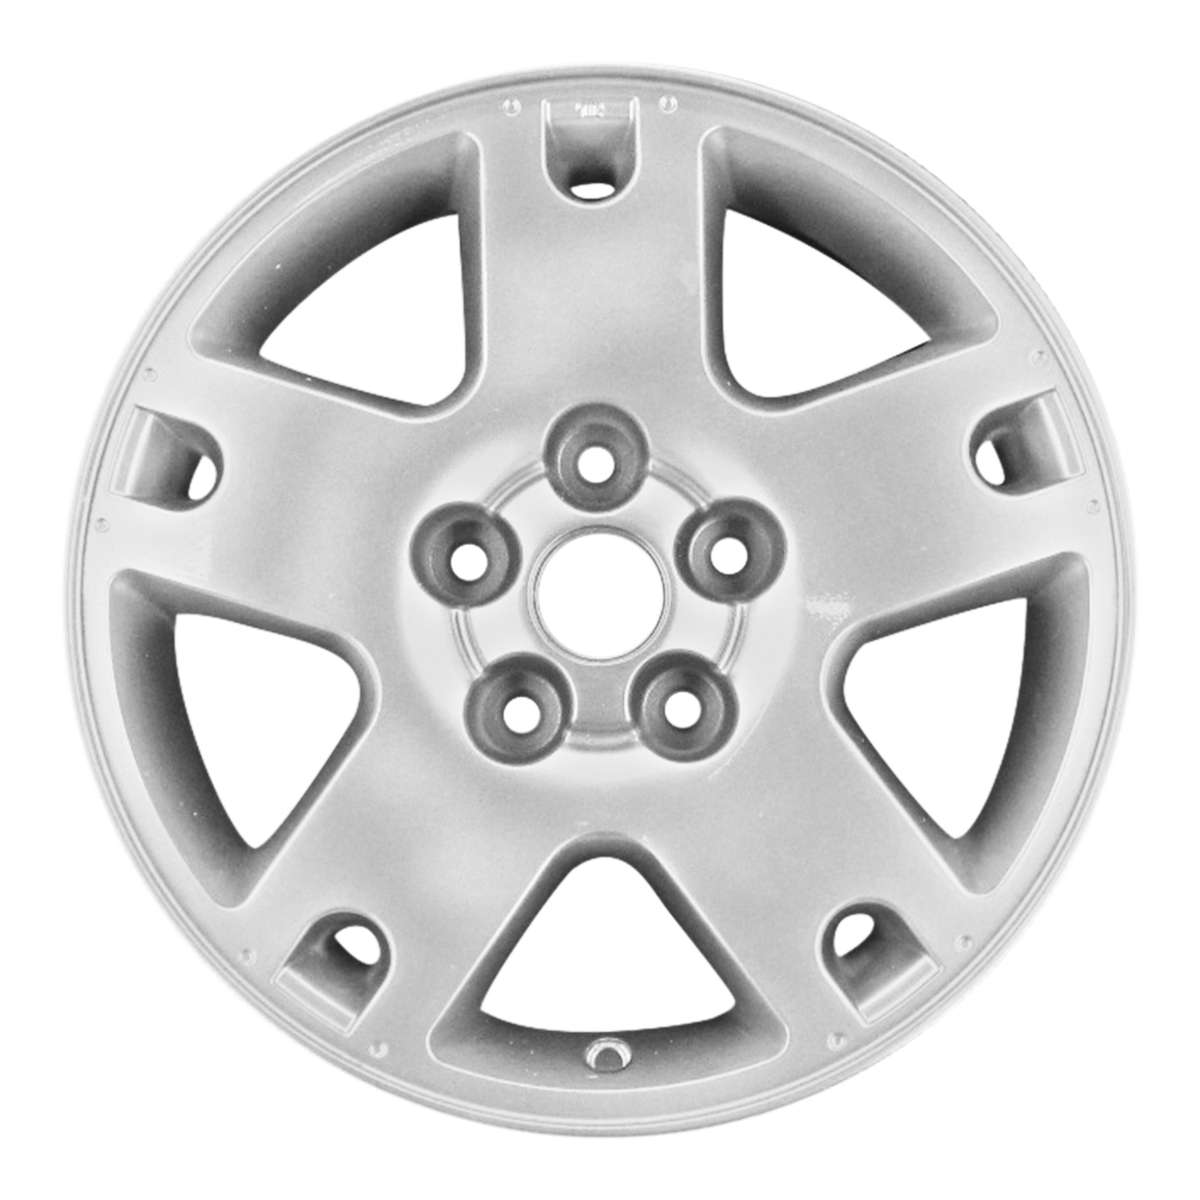 2003 Ford Escape 16" OEM Wheel Rim W3459AS